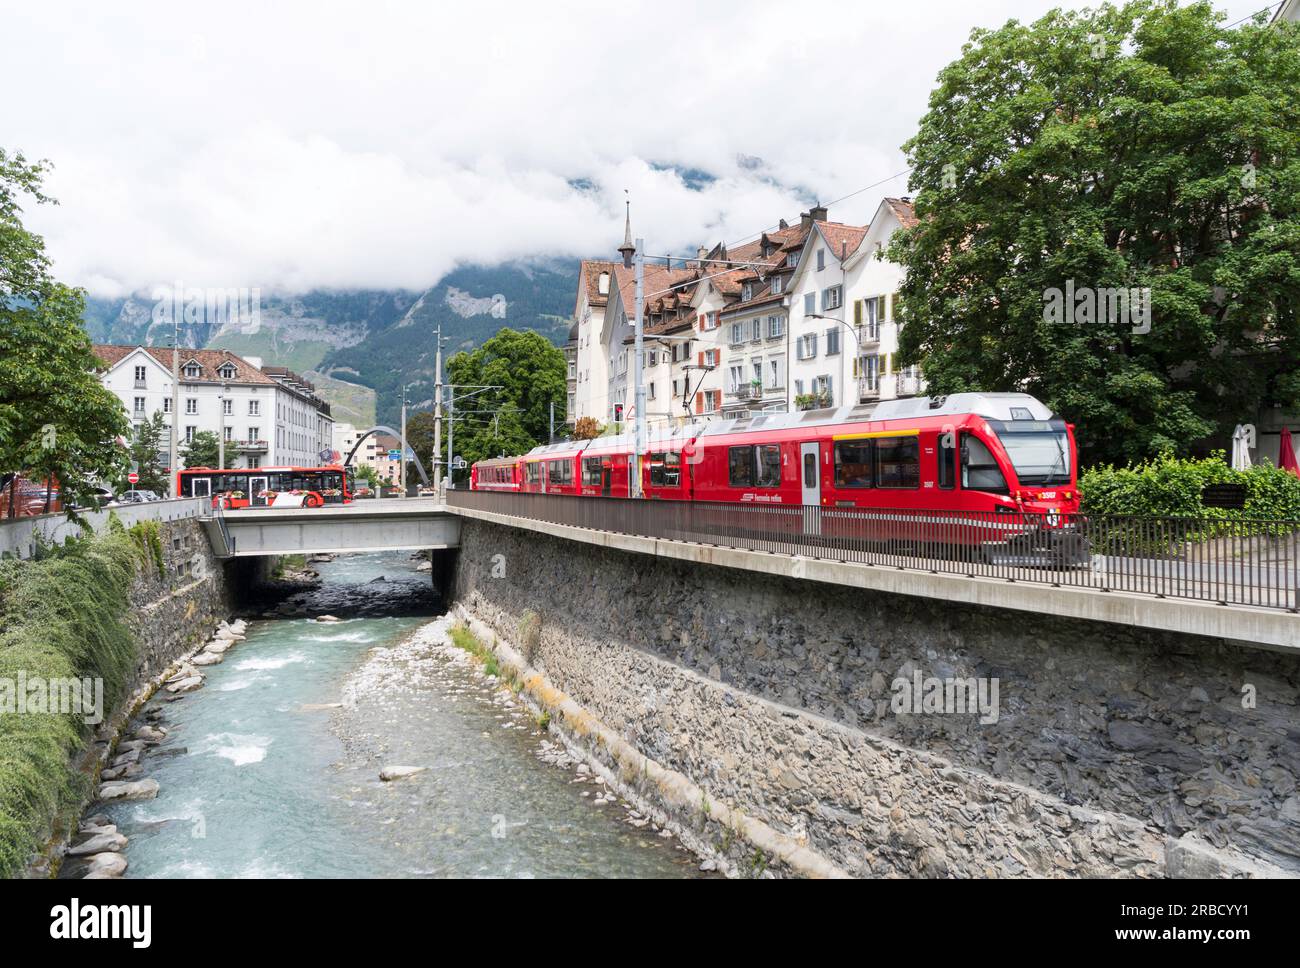 Un train ferroviaire rhétique Ferrovia retica le long de la rivière Plessur à Coire, Suisse, Europe Banque D'Images